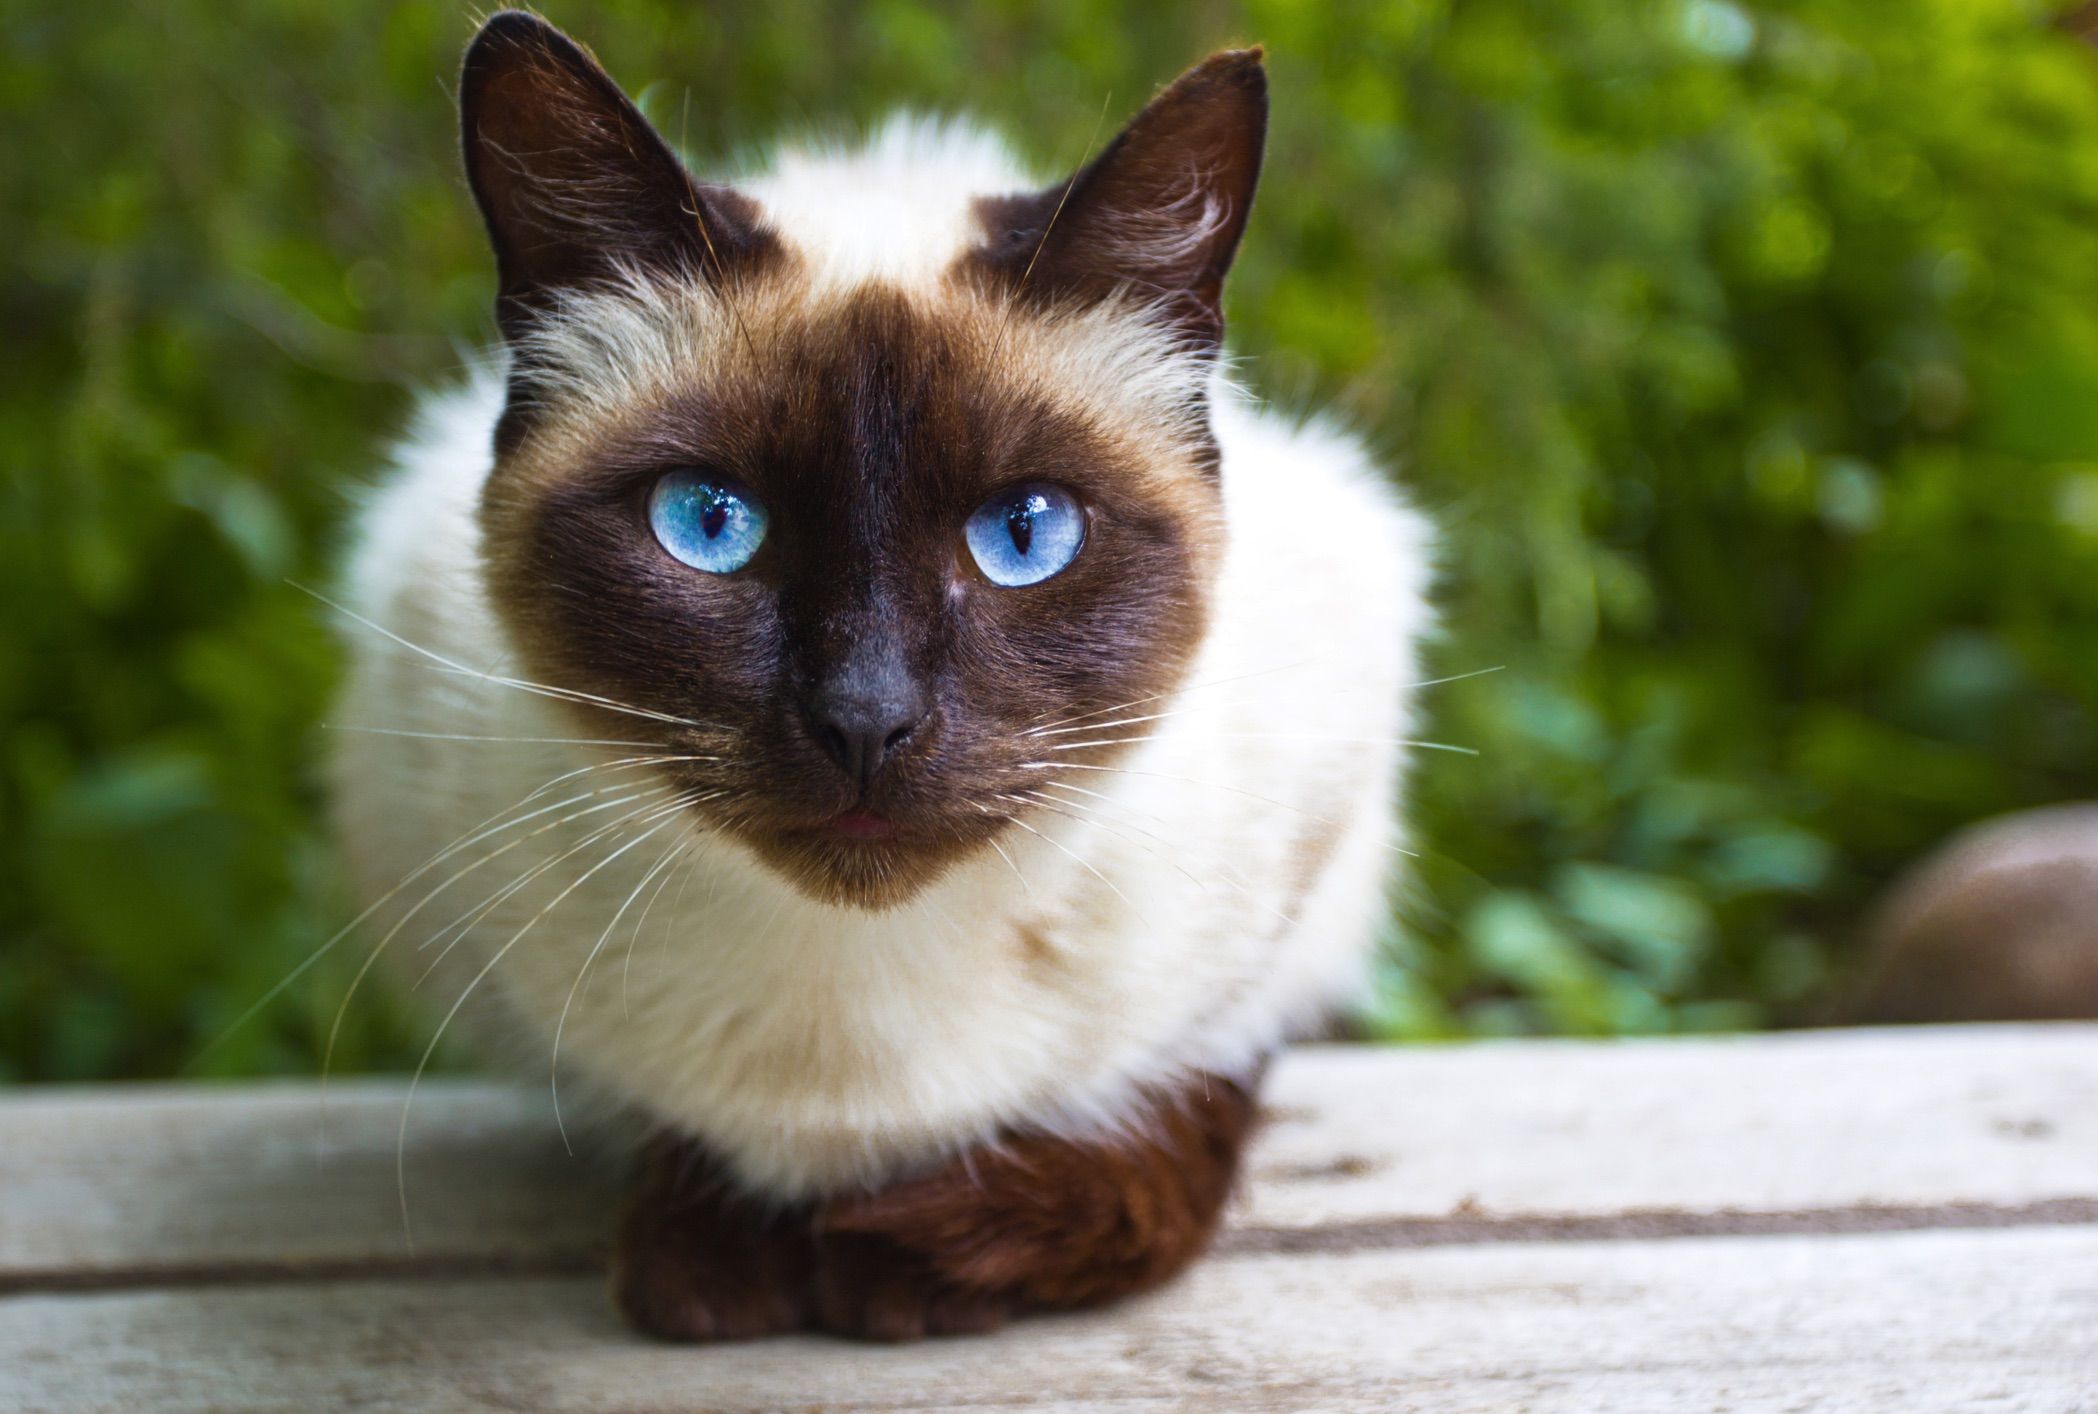 Chùm ảnh đẹp nhất về mèo Xiêm – Những chú mèo xinh đẹp đến từ đất nước Thái Lan - [Kích thước hình ảnh: 2098x1414 px]